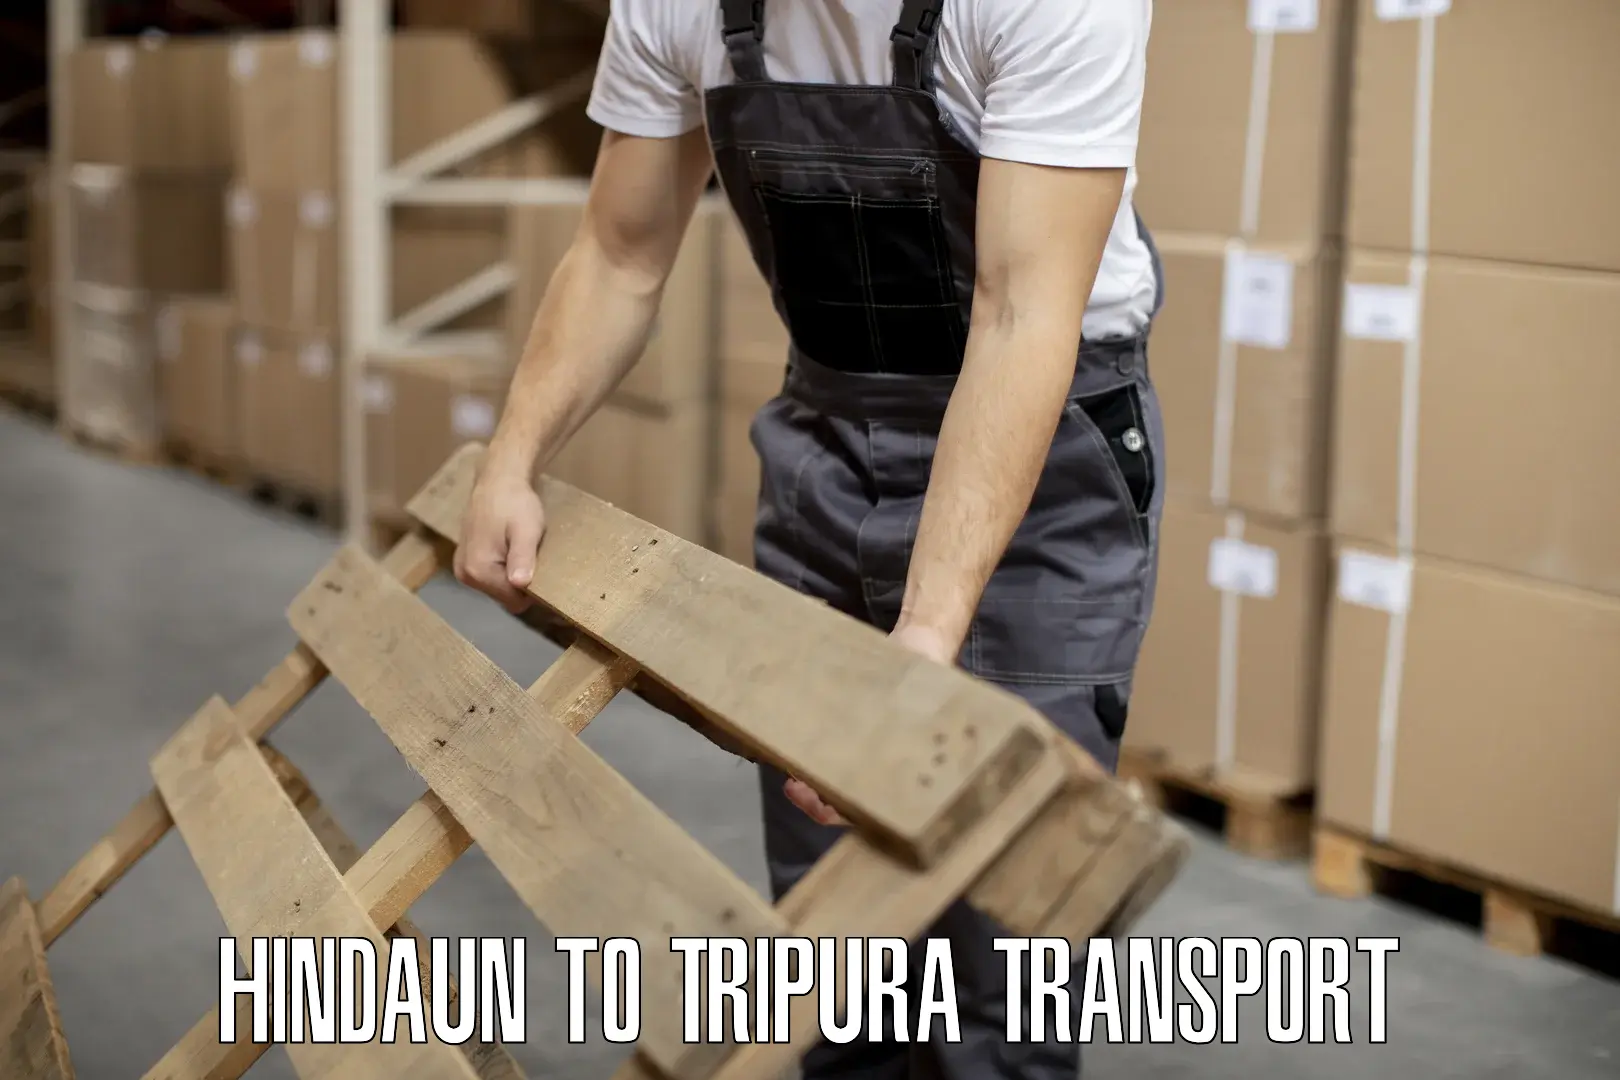 Transport in sharing Hindaun to Udaipur Tripura